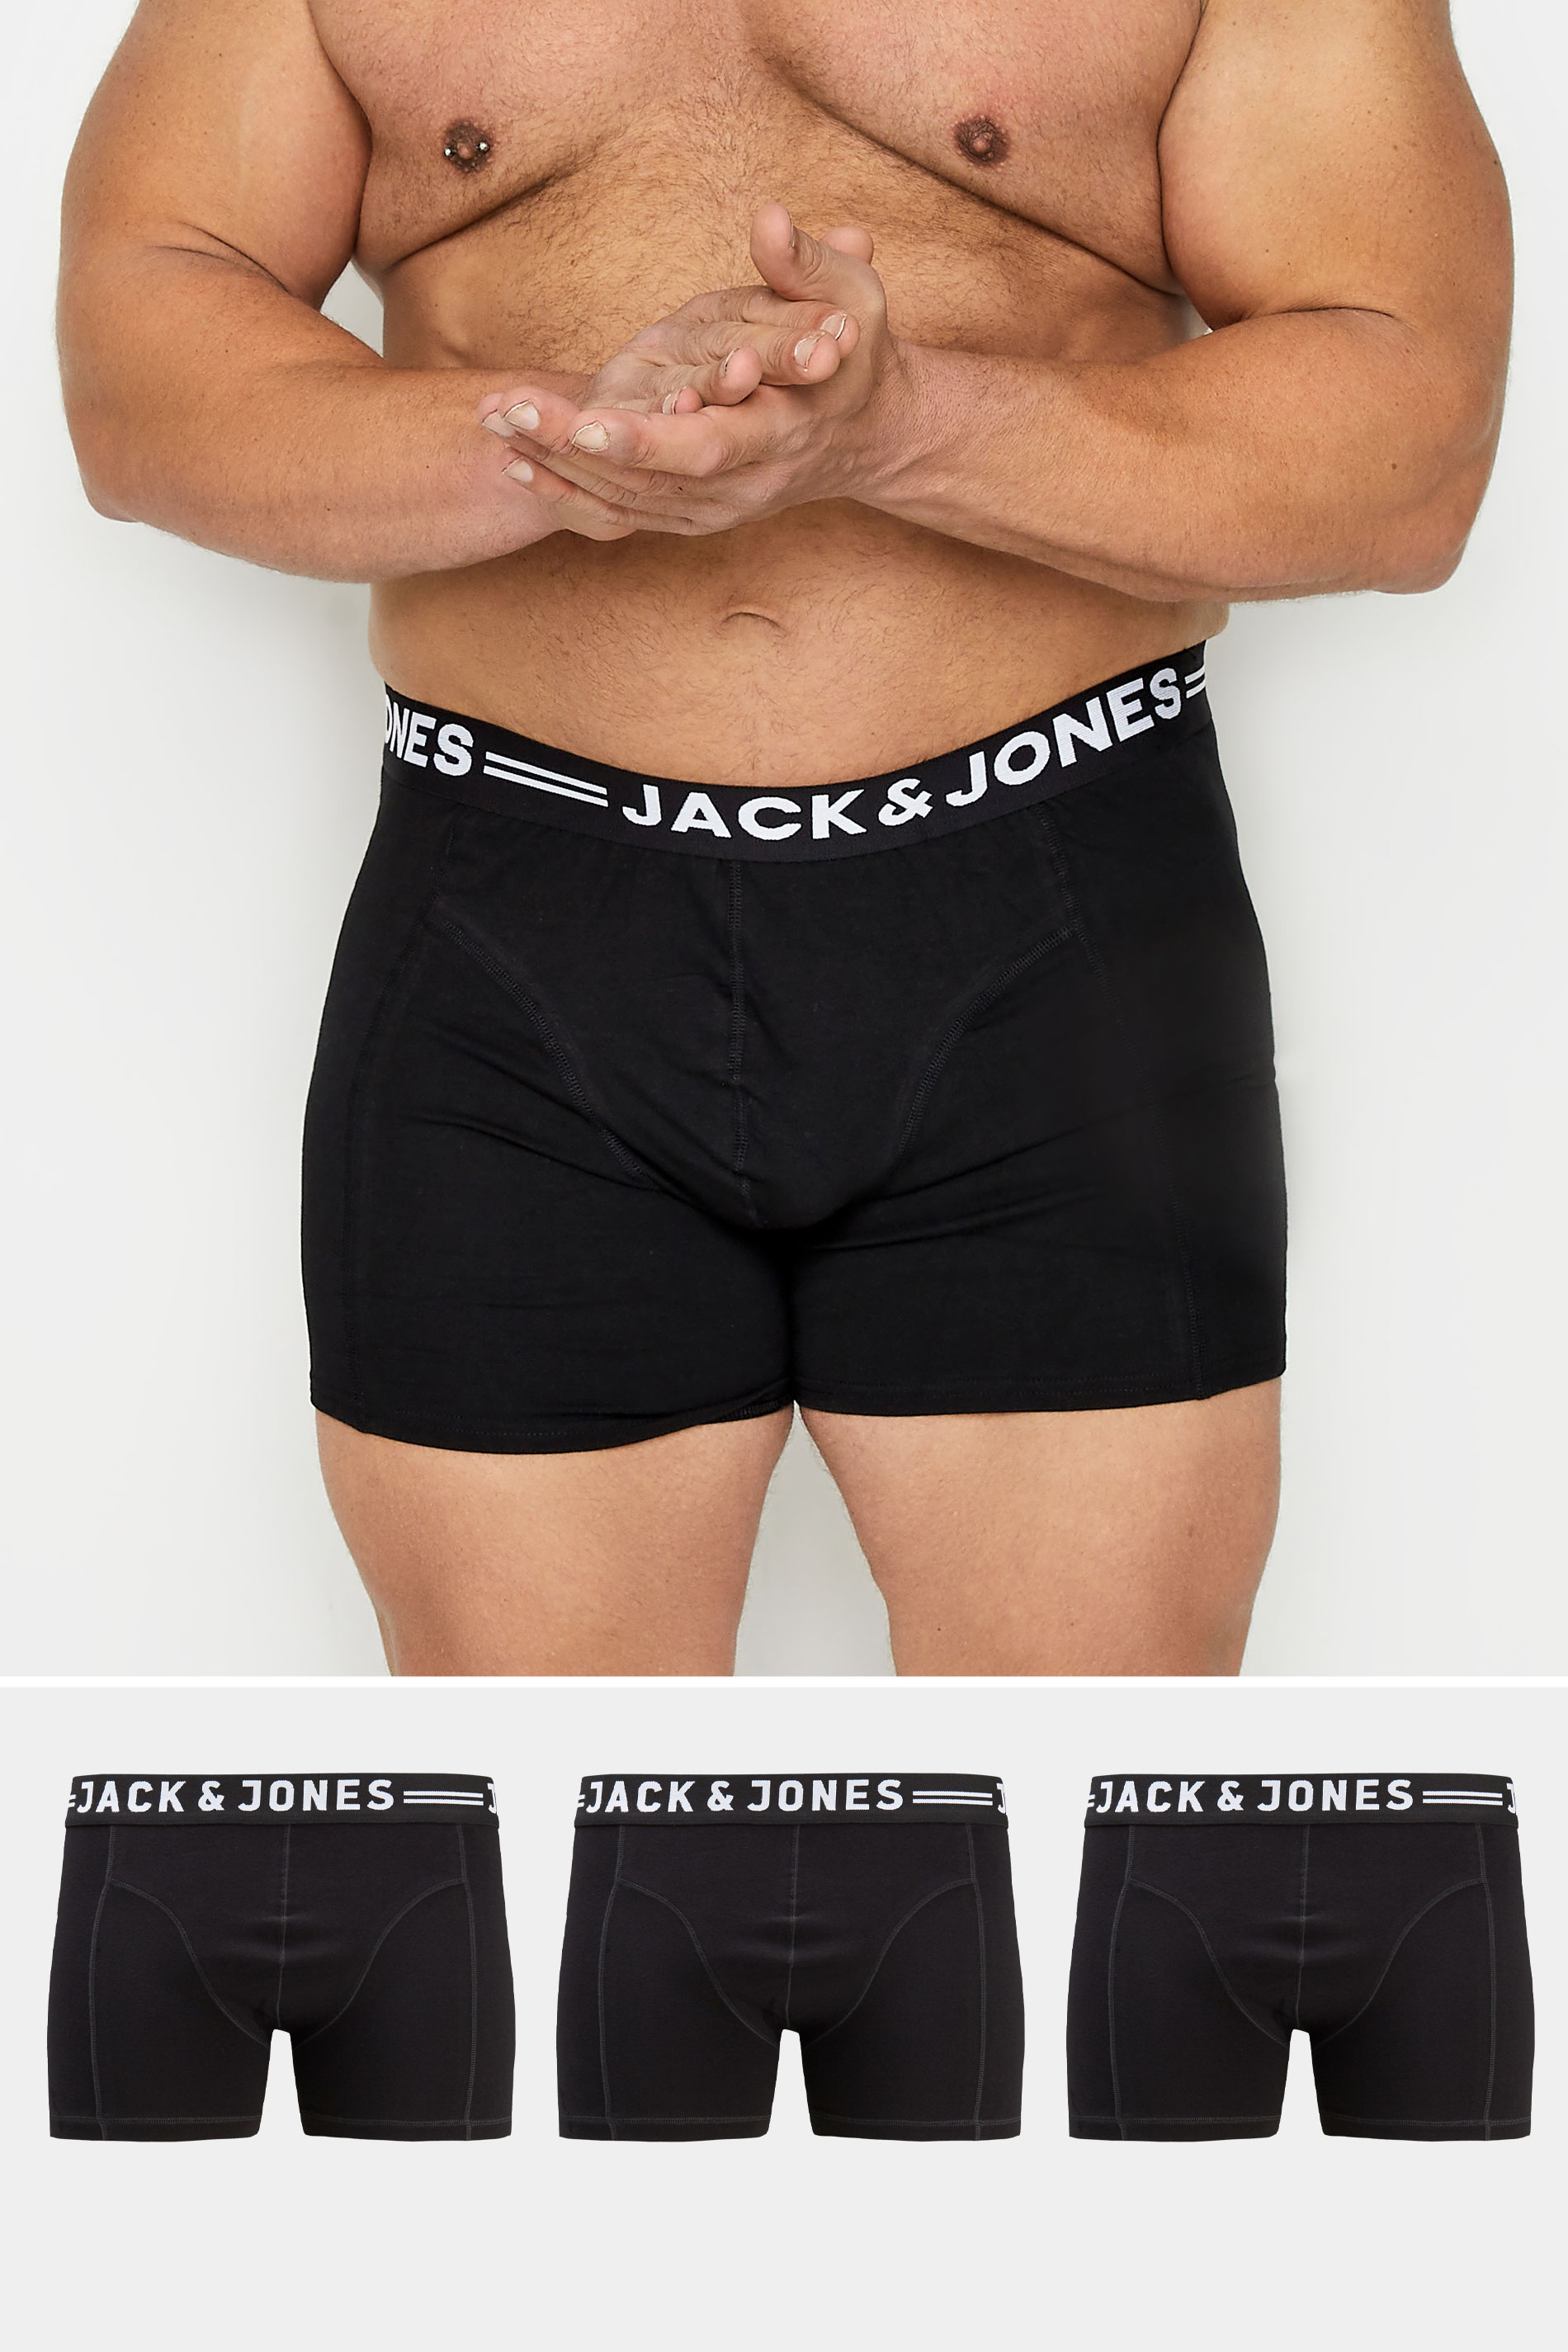 JACK & JONES Black 3 Pack Trunks 1